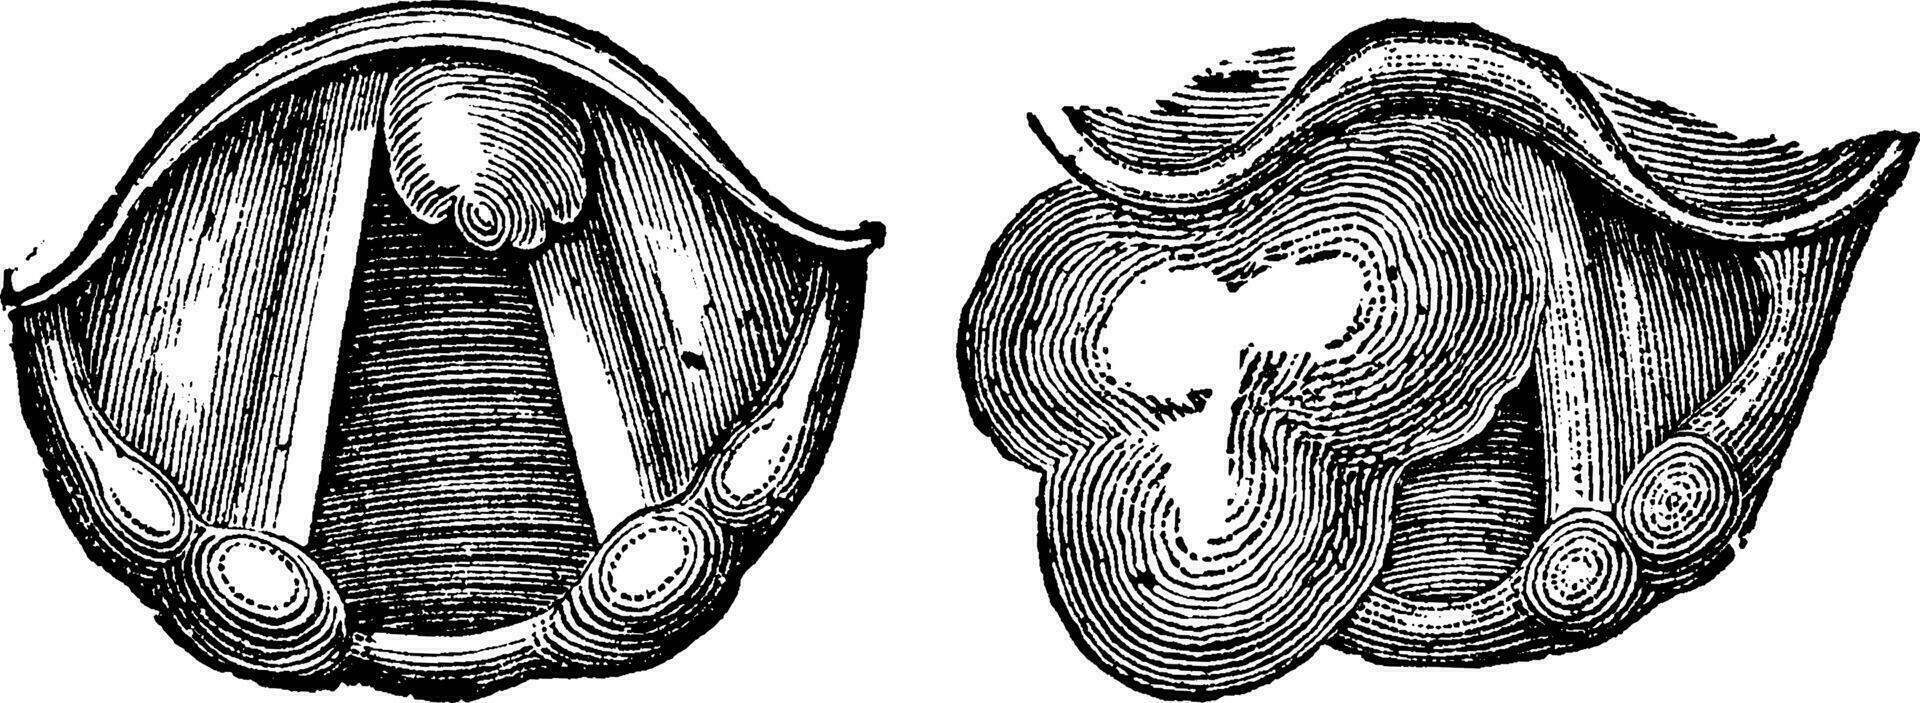 fibromes de le larynx, ancien gravure vecteur